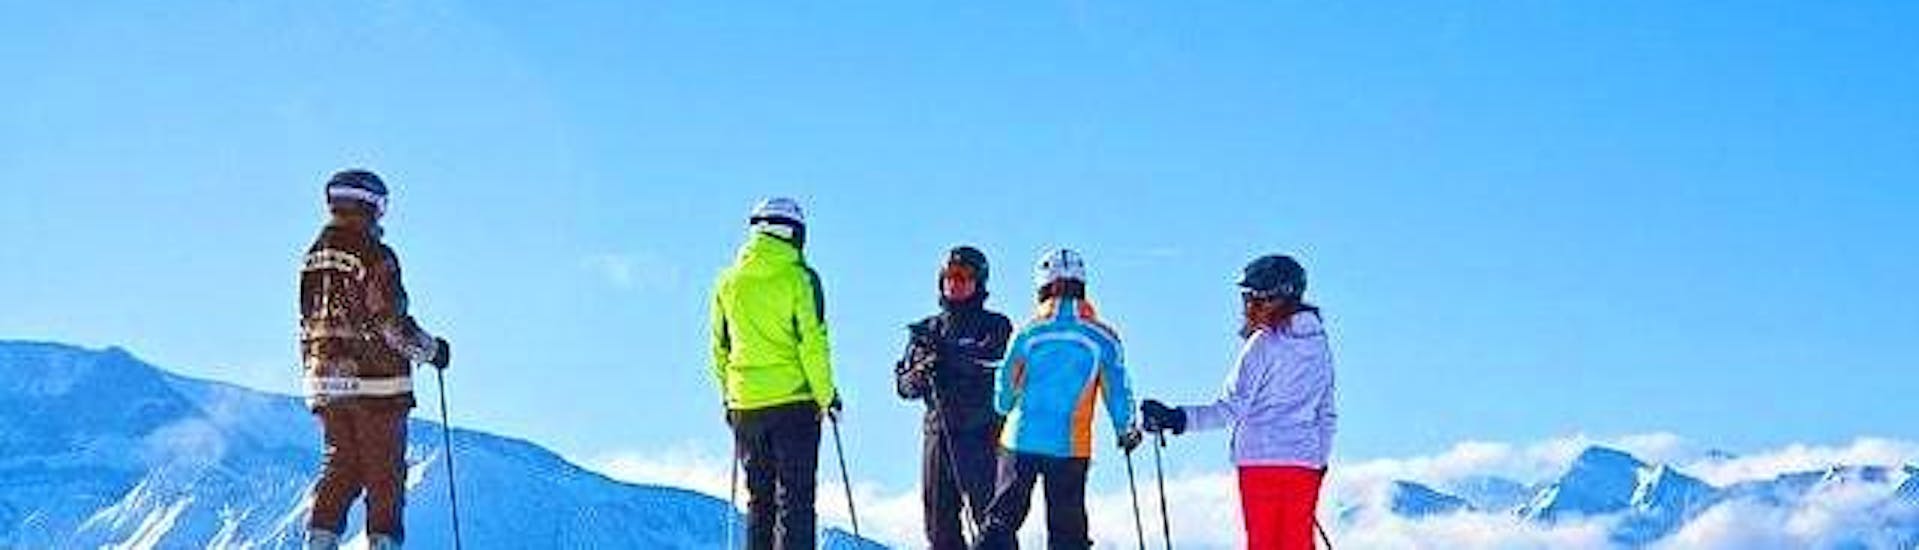 Skikurs für Erwachsene - Alle Levels der Skischule Scuola Italiana Sci Azzurra Folgarida finden statt, die Gruppe ist bereit, die Piste hinunterzufahren.